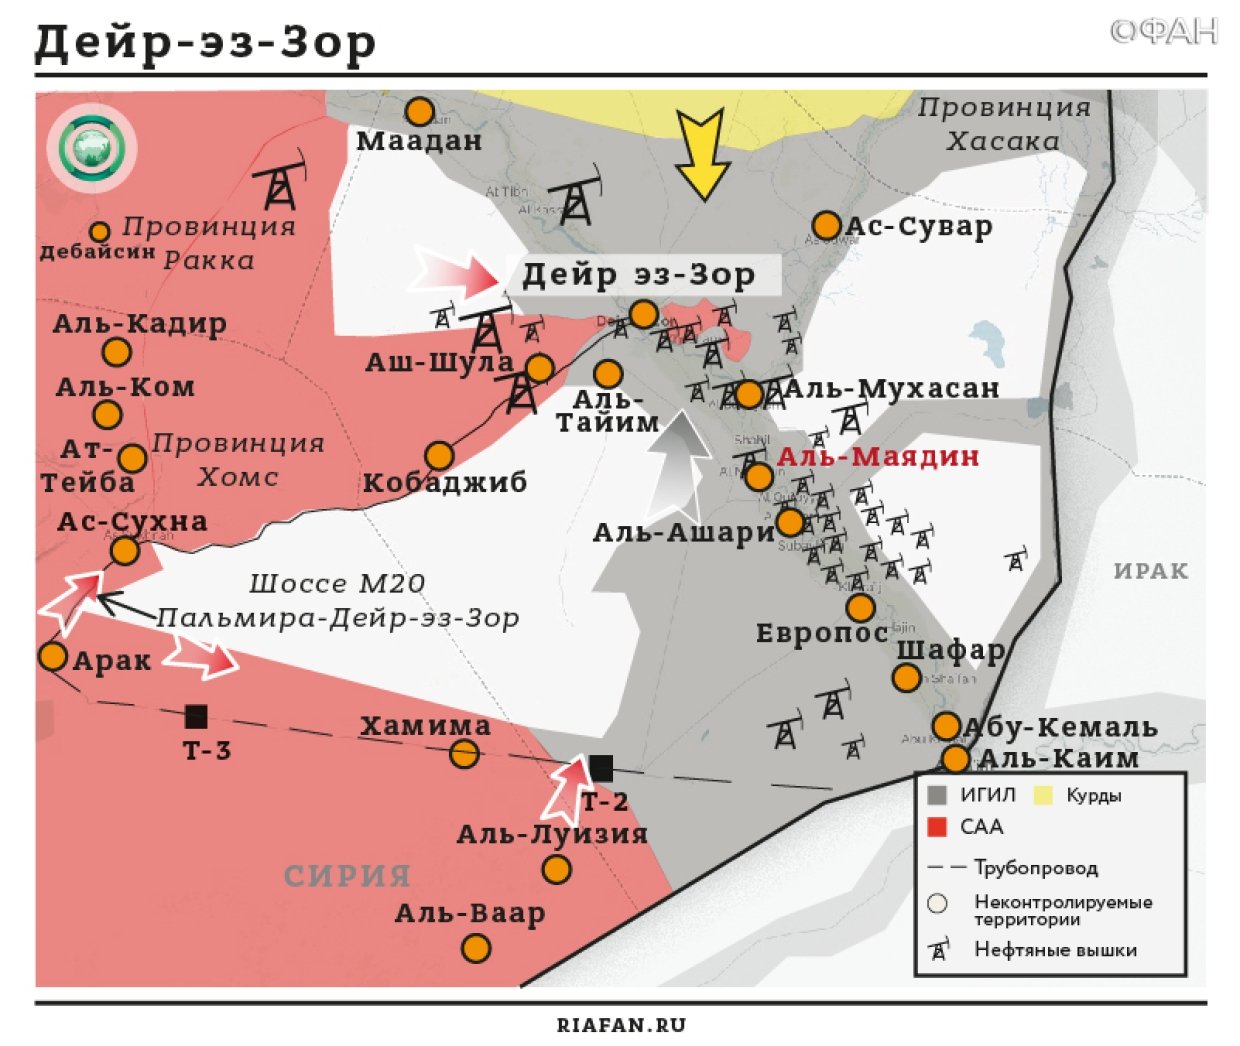 Сирия новости 9 сентября 12.30: ВКС РФ продолжают обеспечивать продвижение армии САР, в Алеппо идут бои между SDF и ССА